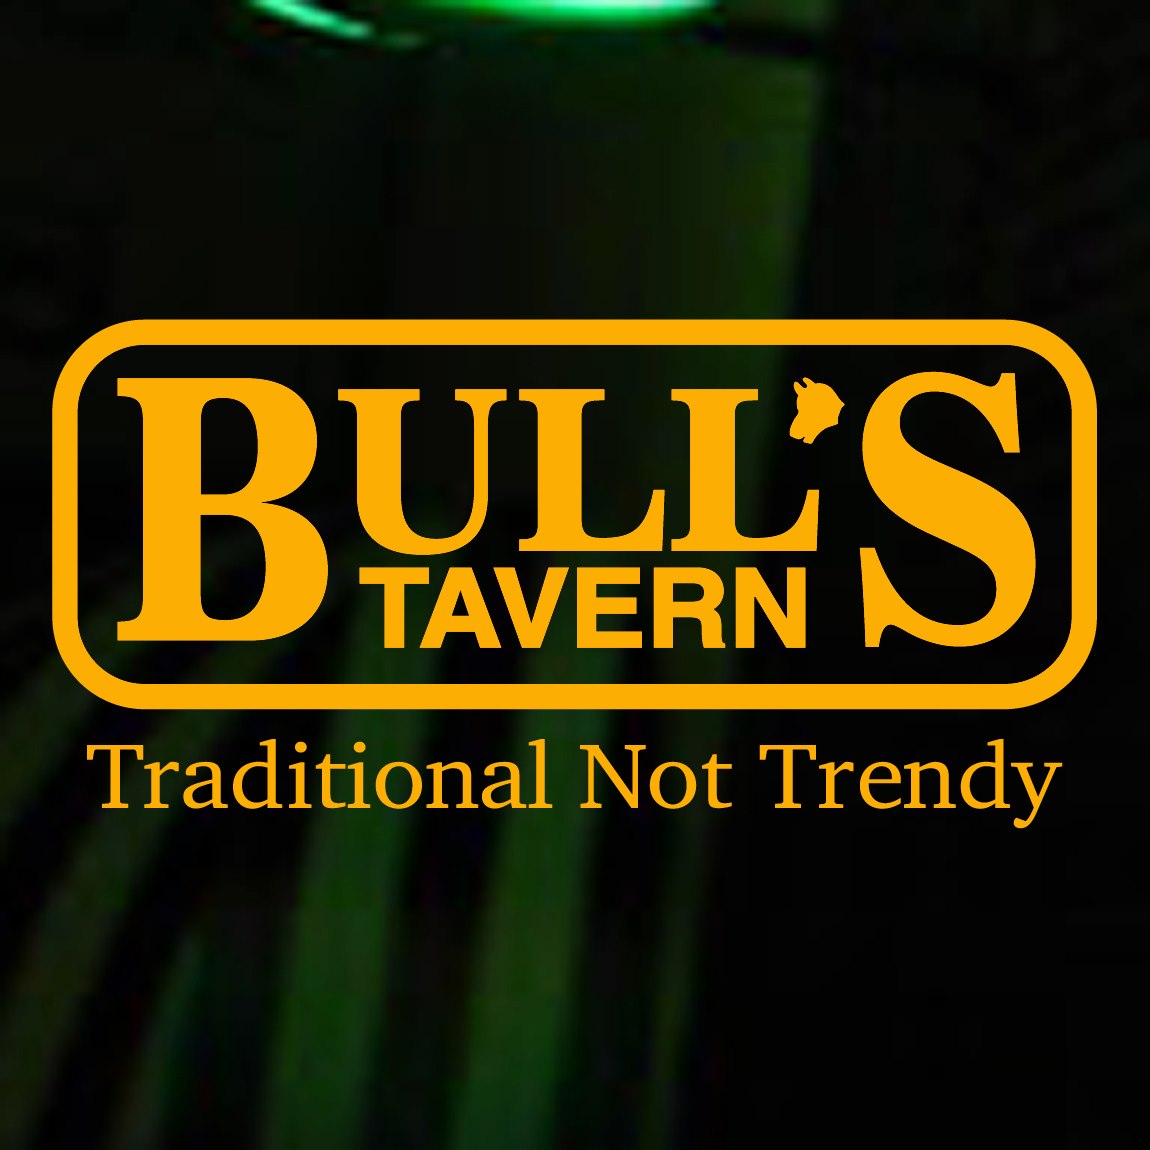 Bull's Tavern